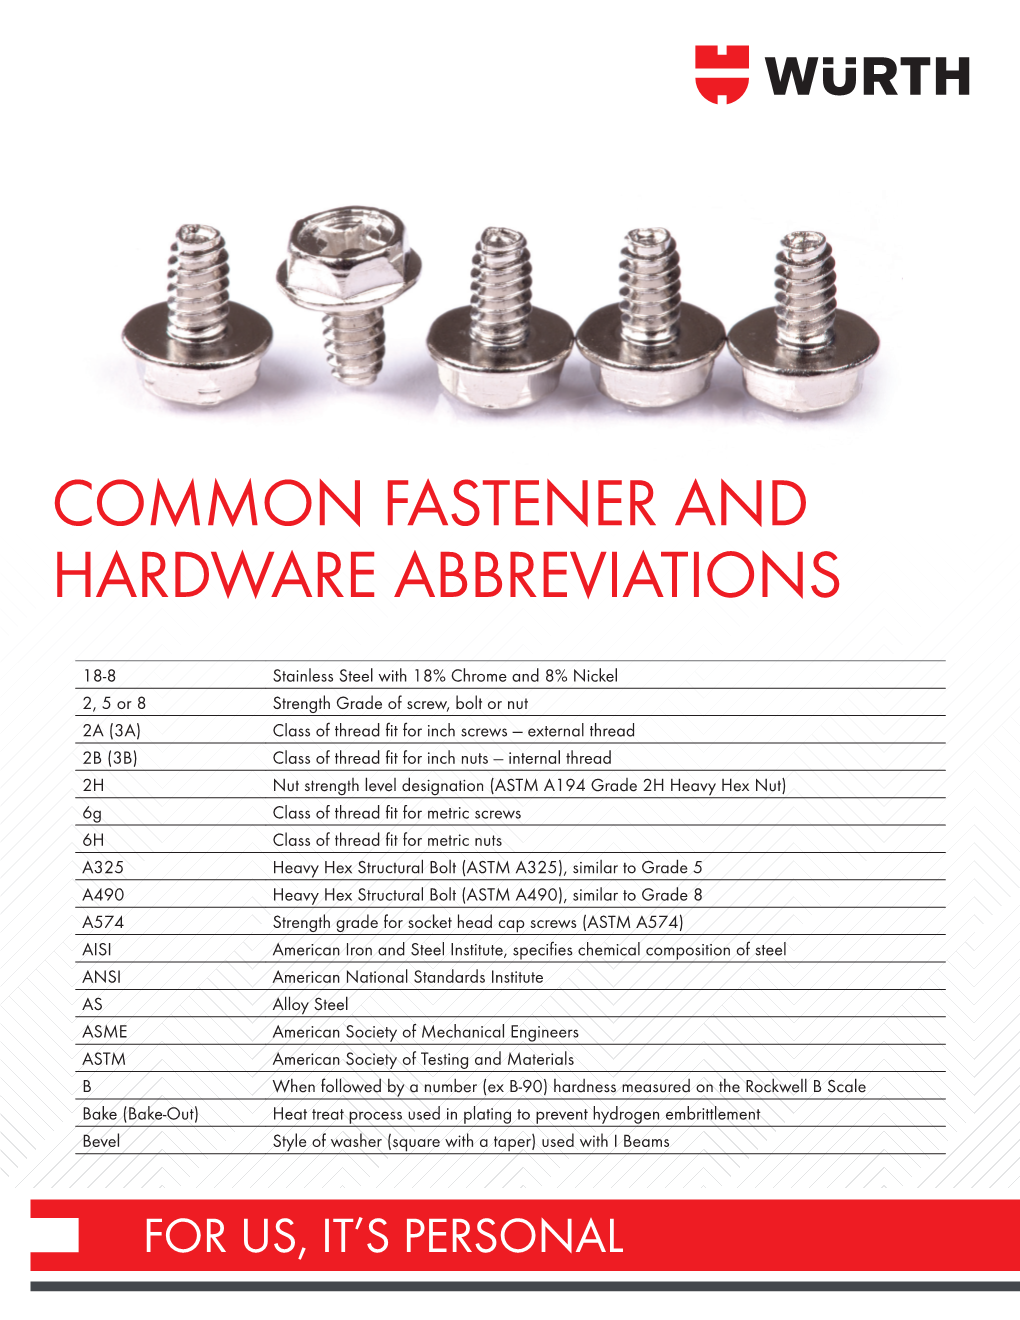 Common Fastener & Hardware Abbreviations